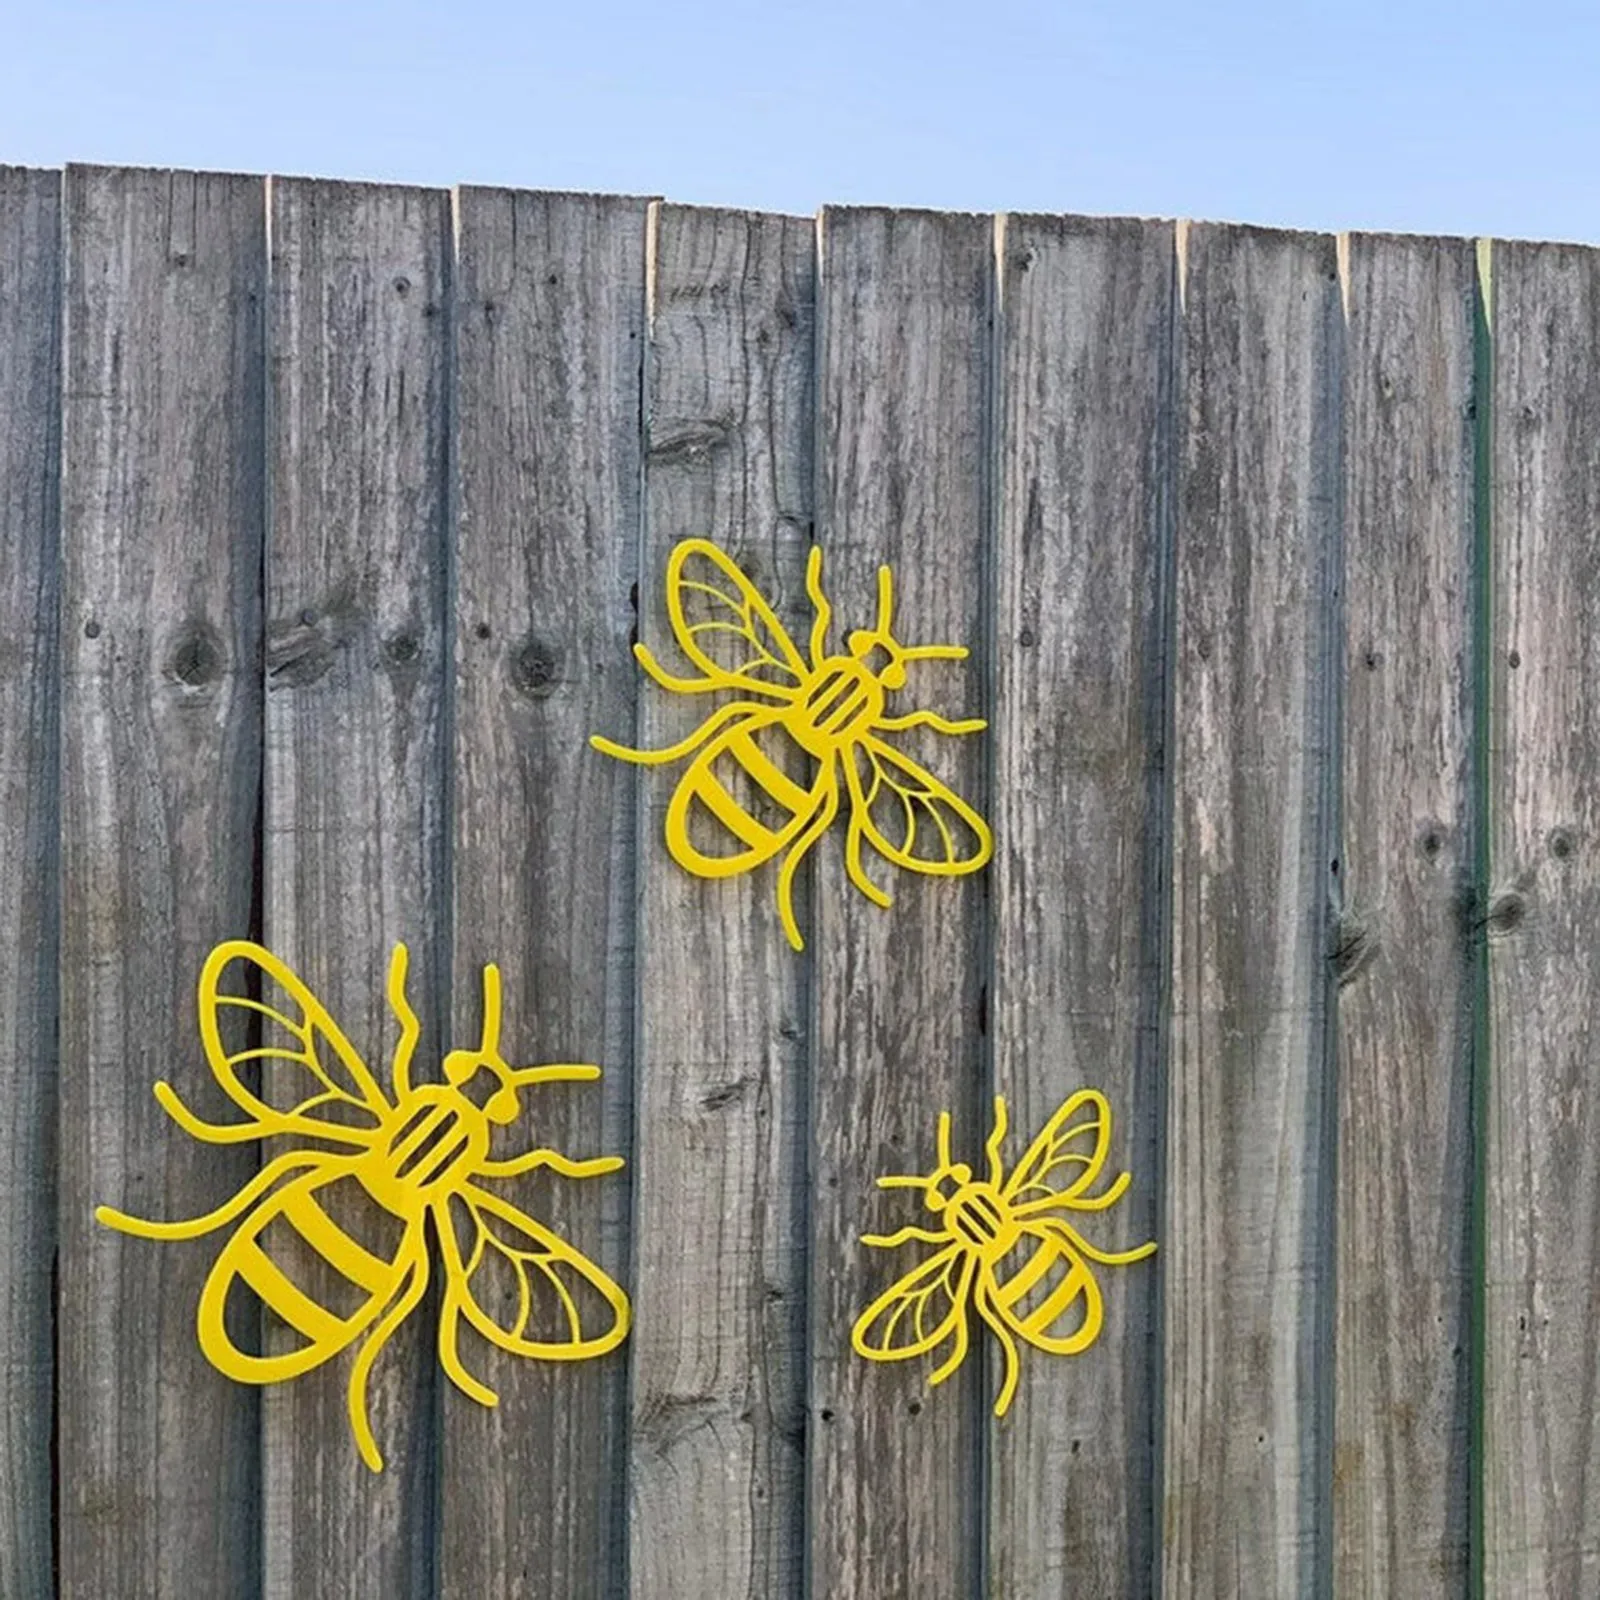 

3 шт./компл. креативное украшение для сада в виде пчелы, статуи насекомых, стиль сельской местности, акриловая искусственная наклейка с знако...